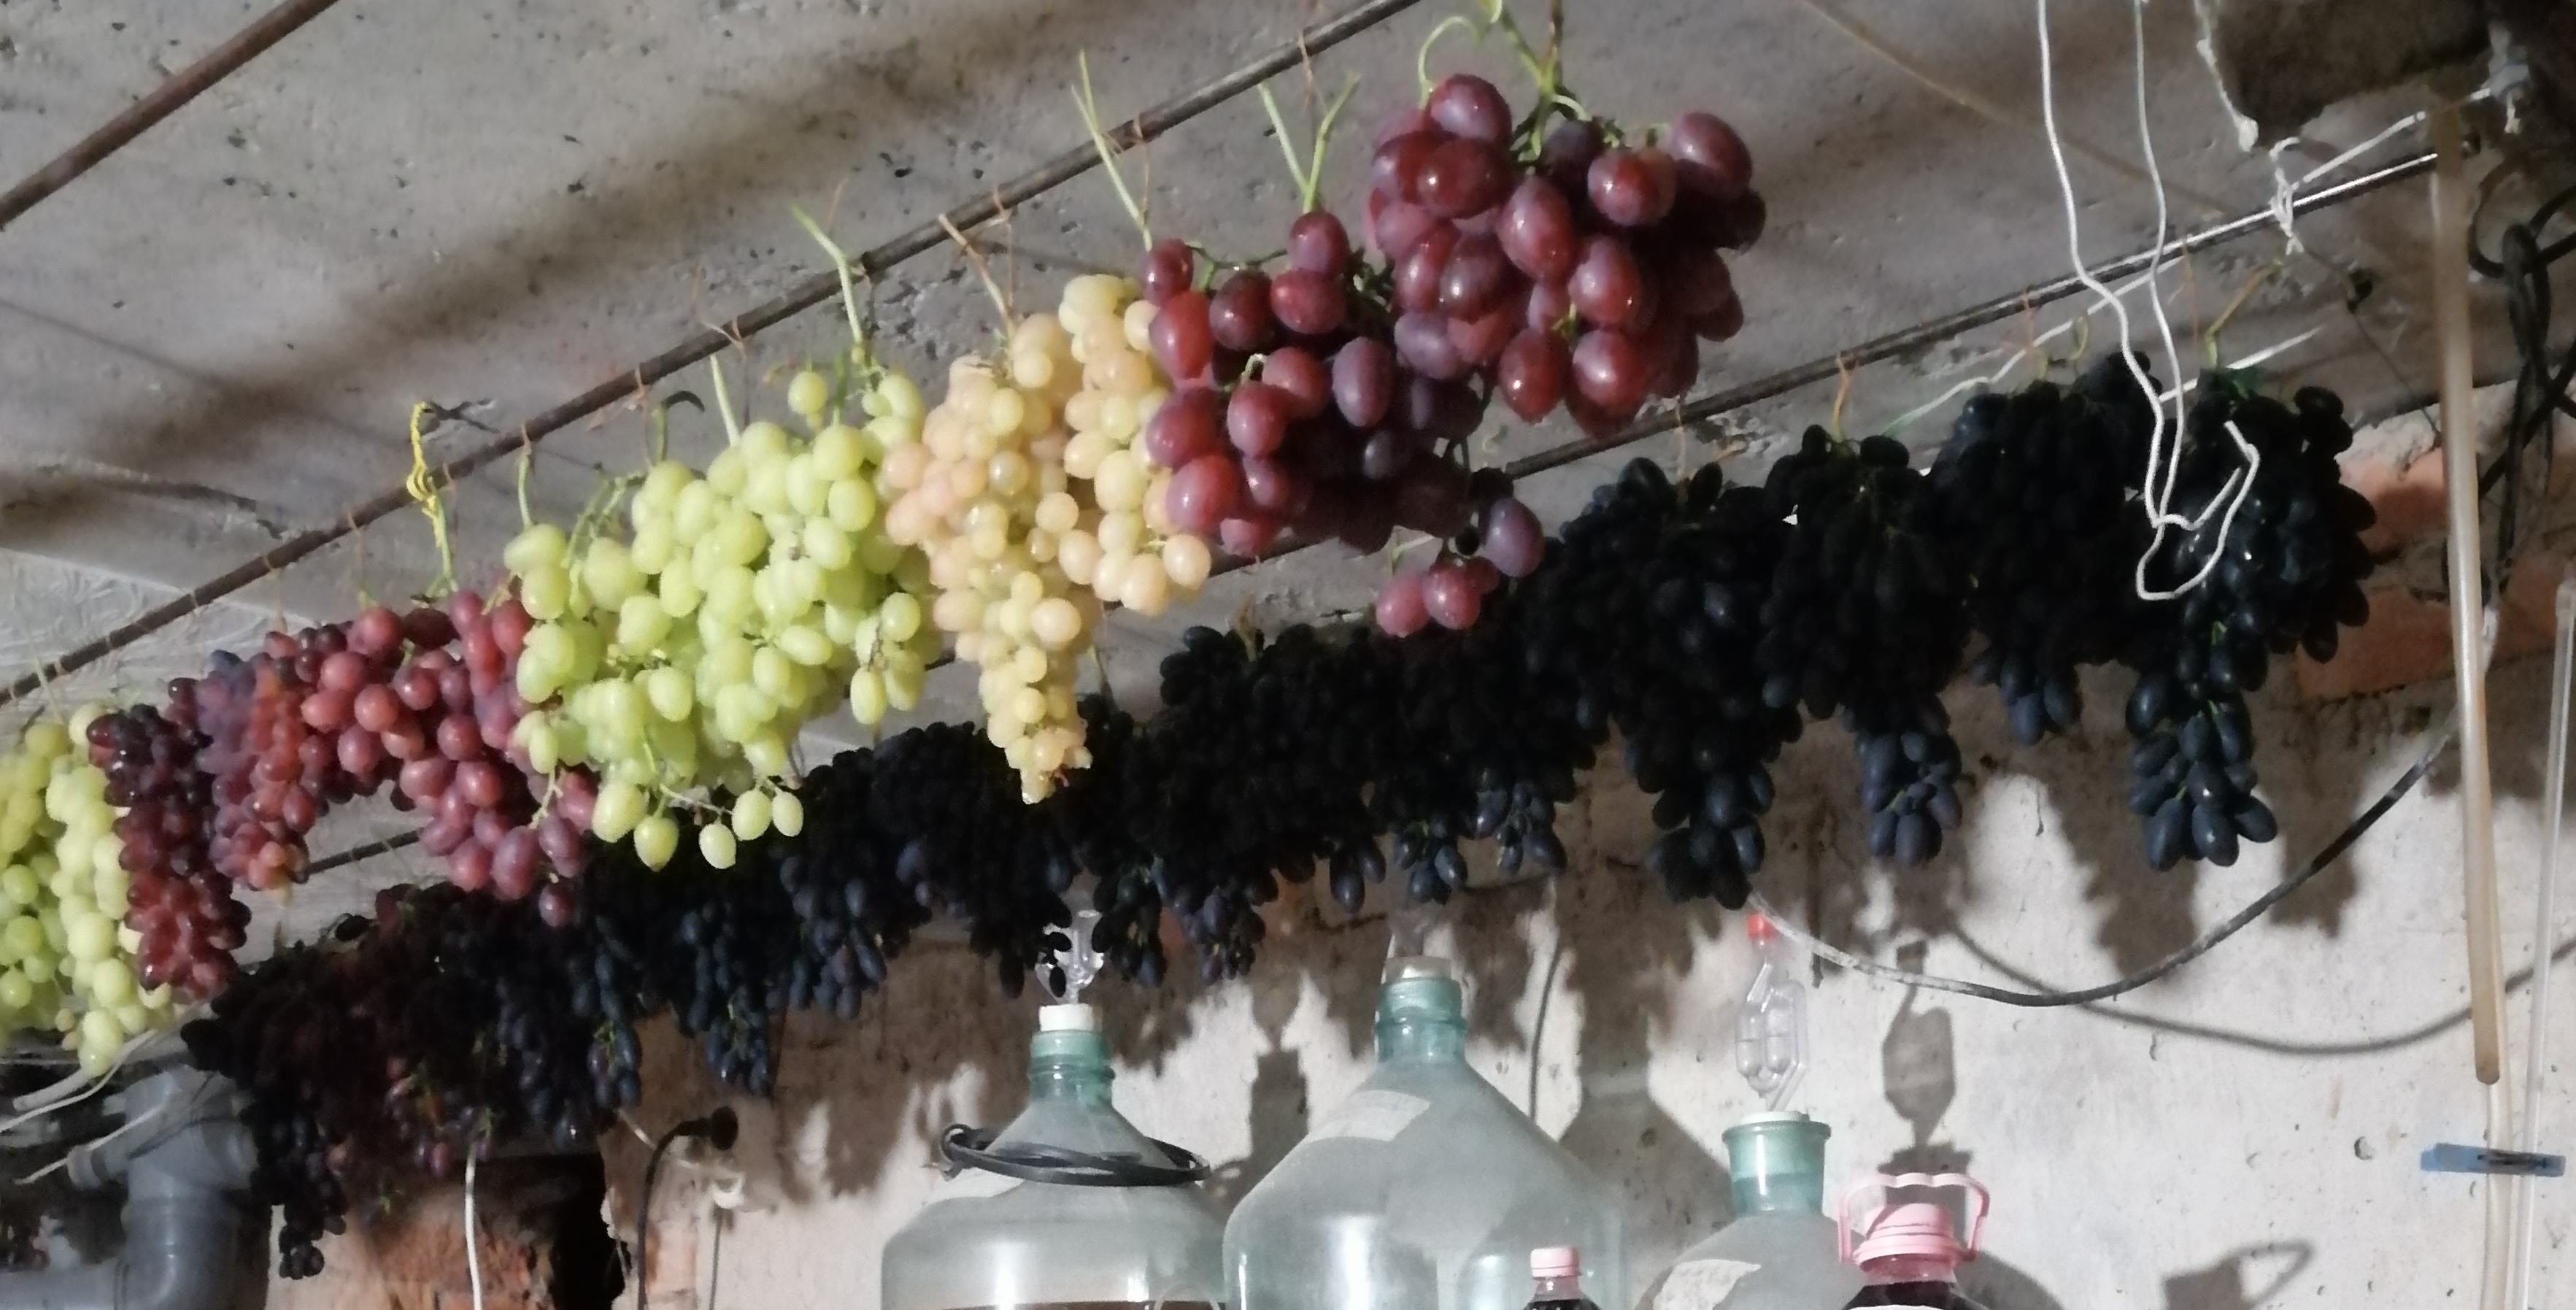 Как правильно хранить виноград в домашних условиях: в холодильнике или при комнатной температуре